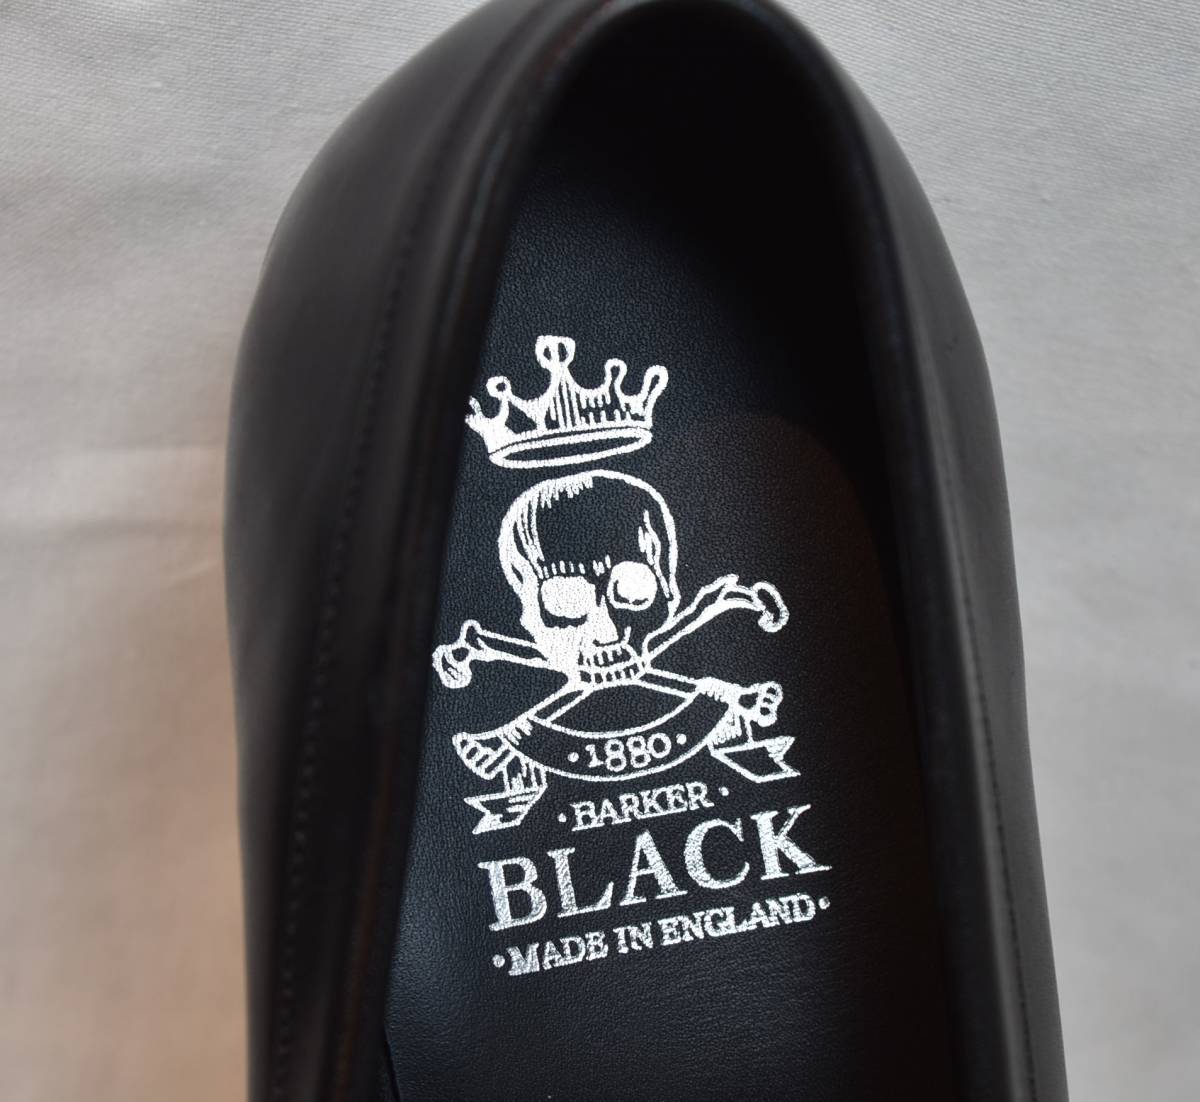 BARKER BLACK Barker черный седло Loafer MO140/WOLFE чёрный машина fUK8.5 27cm соответствует не использовался товар Англия производства 